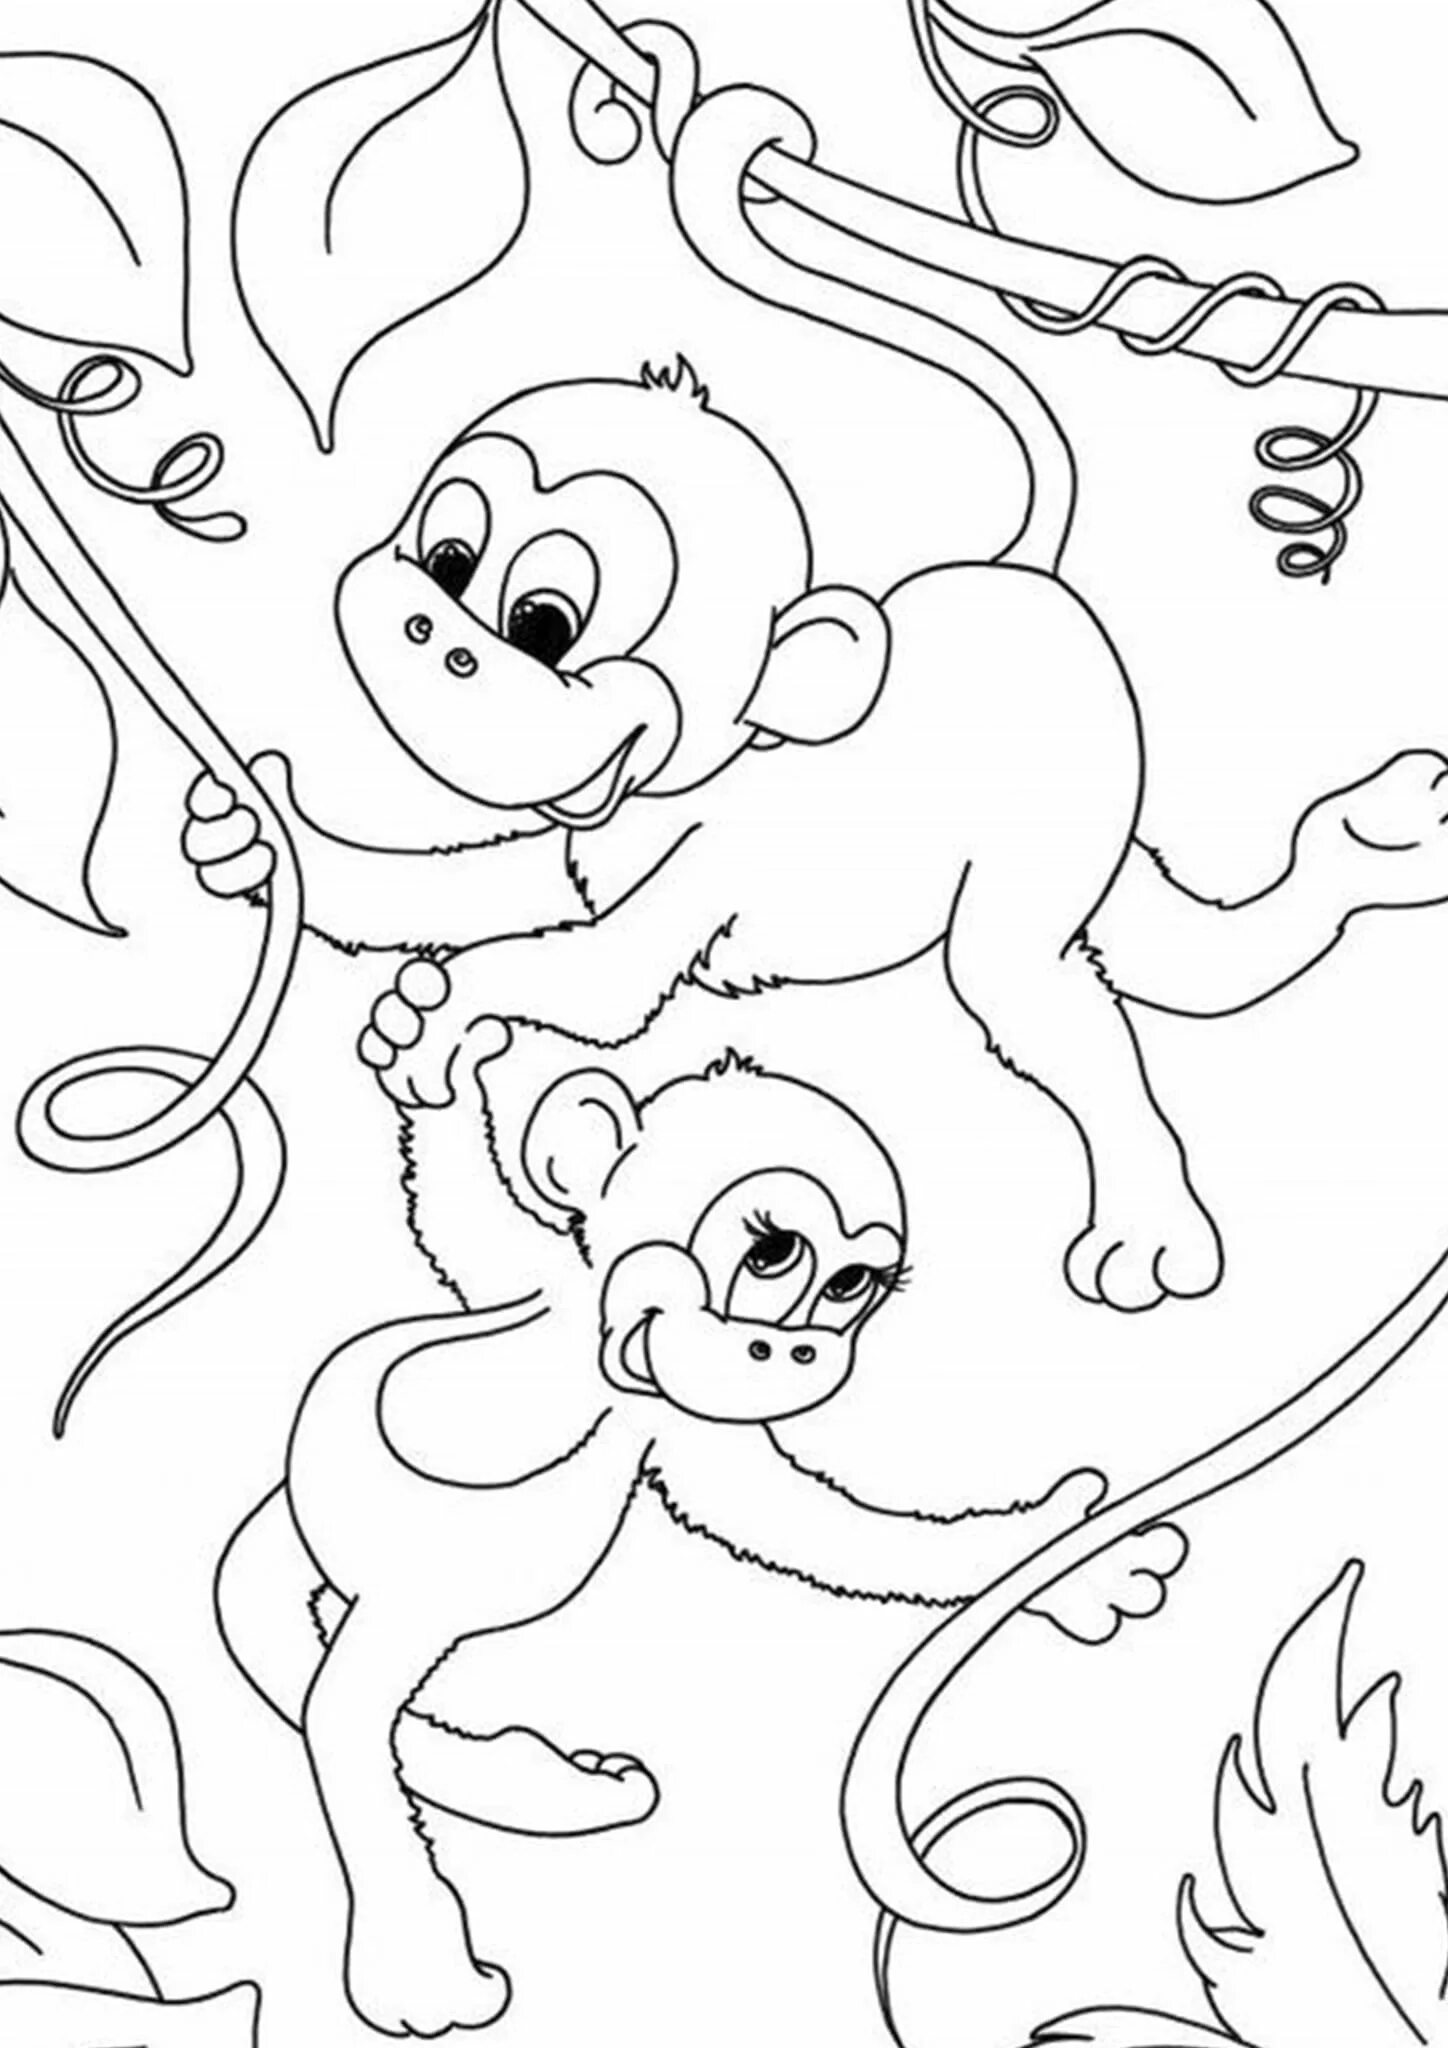 Wonderful coloring monkey